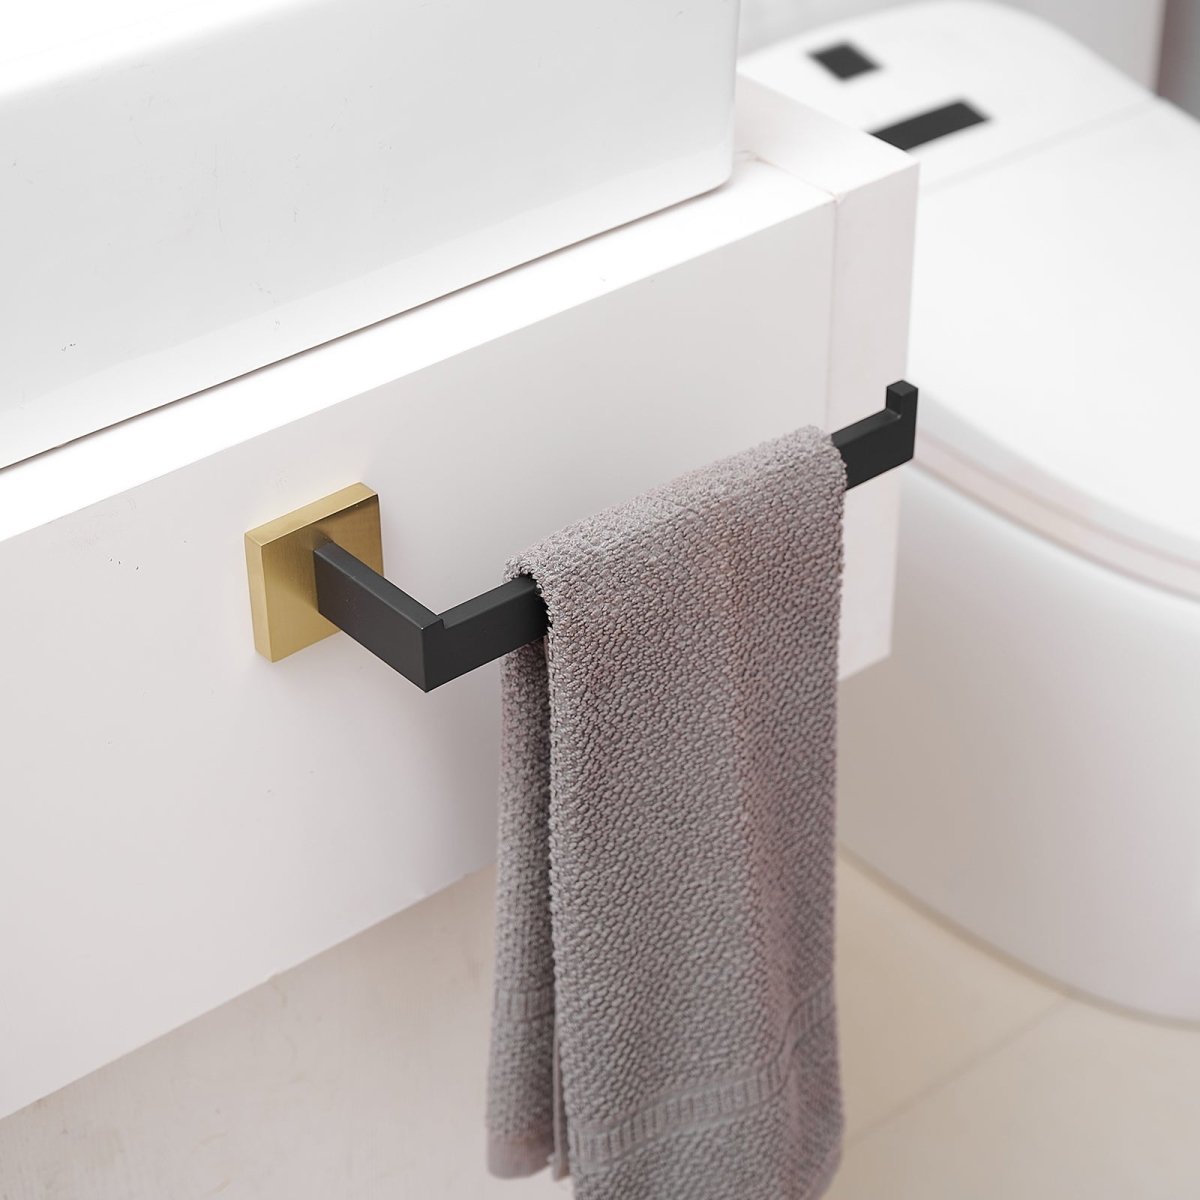 5 PCS Towel Bar Towel Hook Toilet Paper Holder Set Black Gold - buyfaucet.com